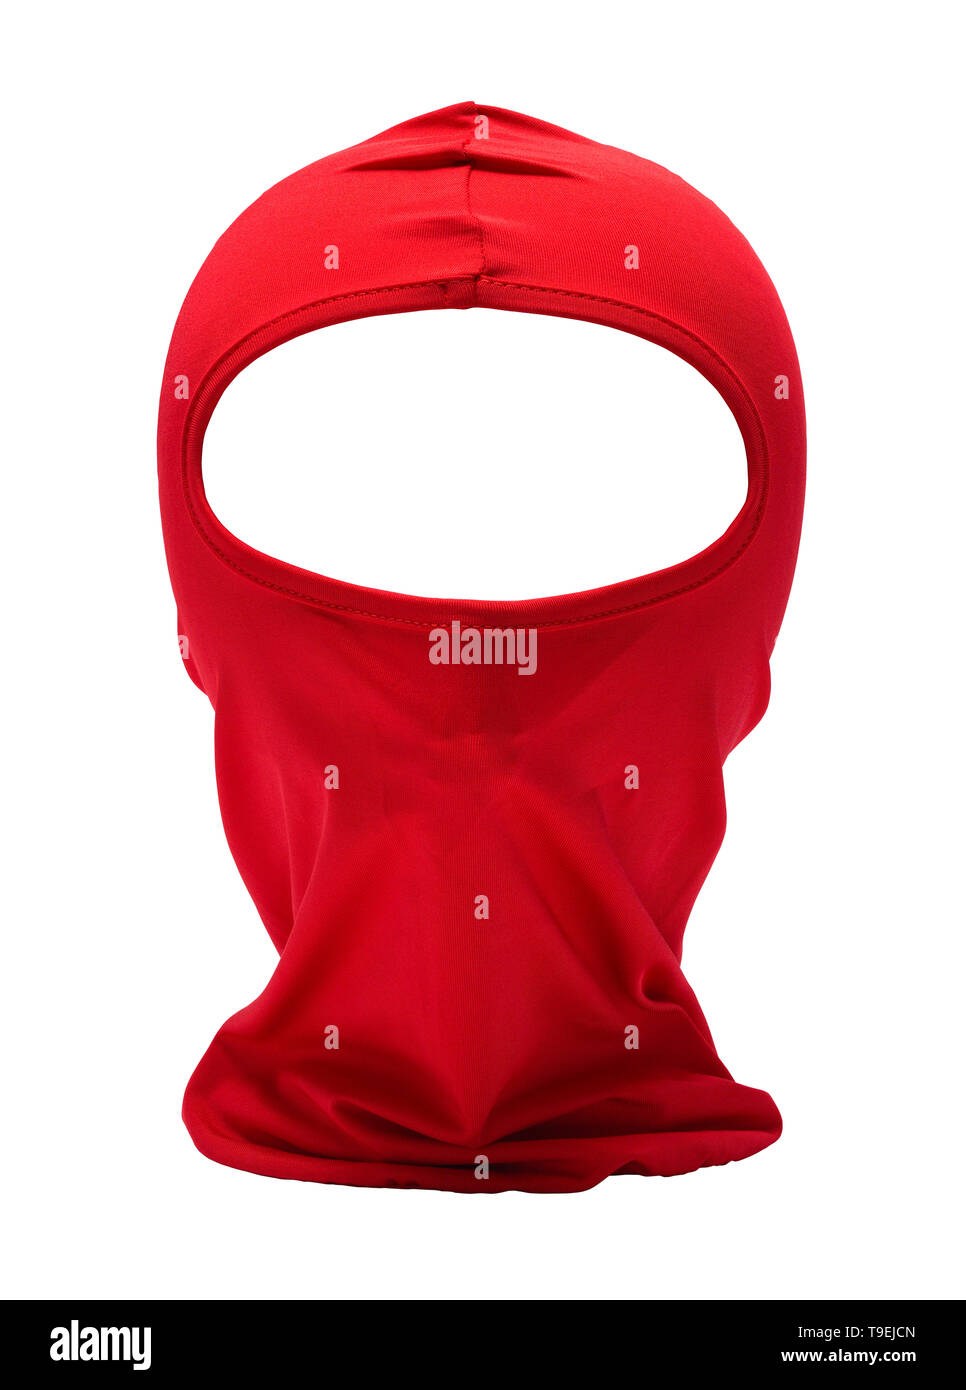 Ninja mask immagini e fotografie stock ad alta risoluzione - Alamy